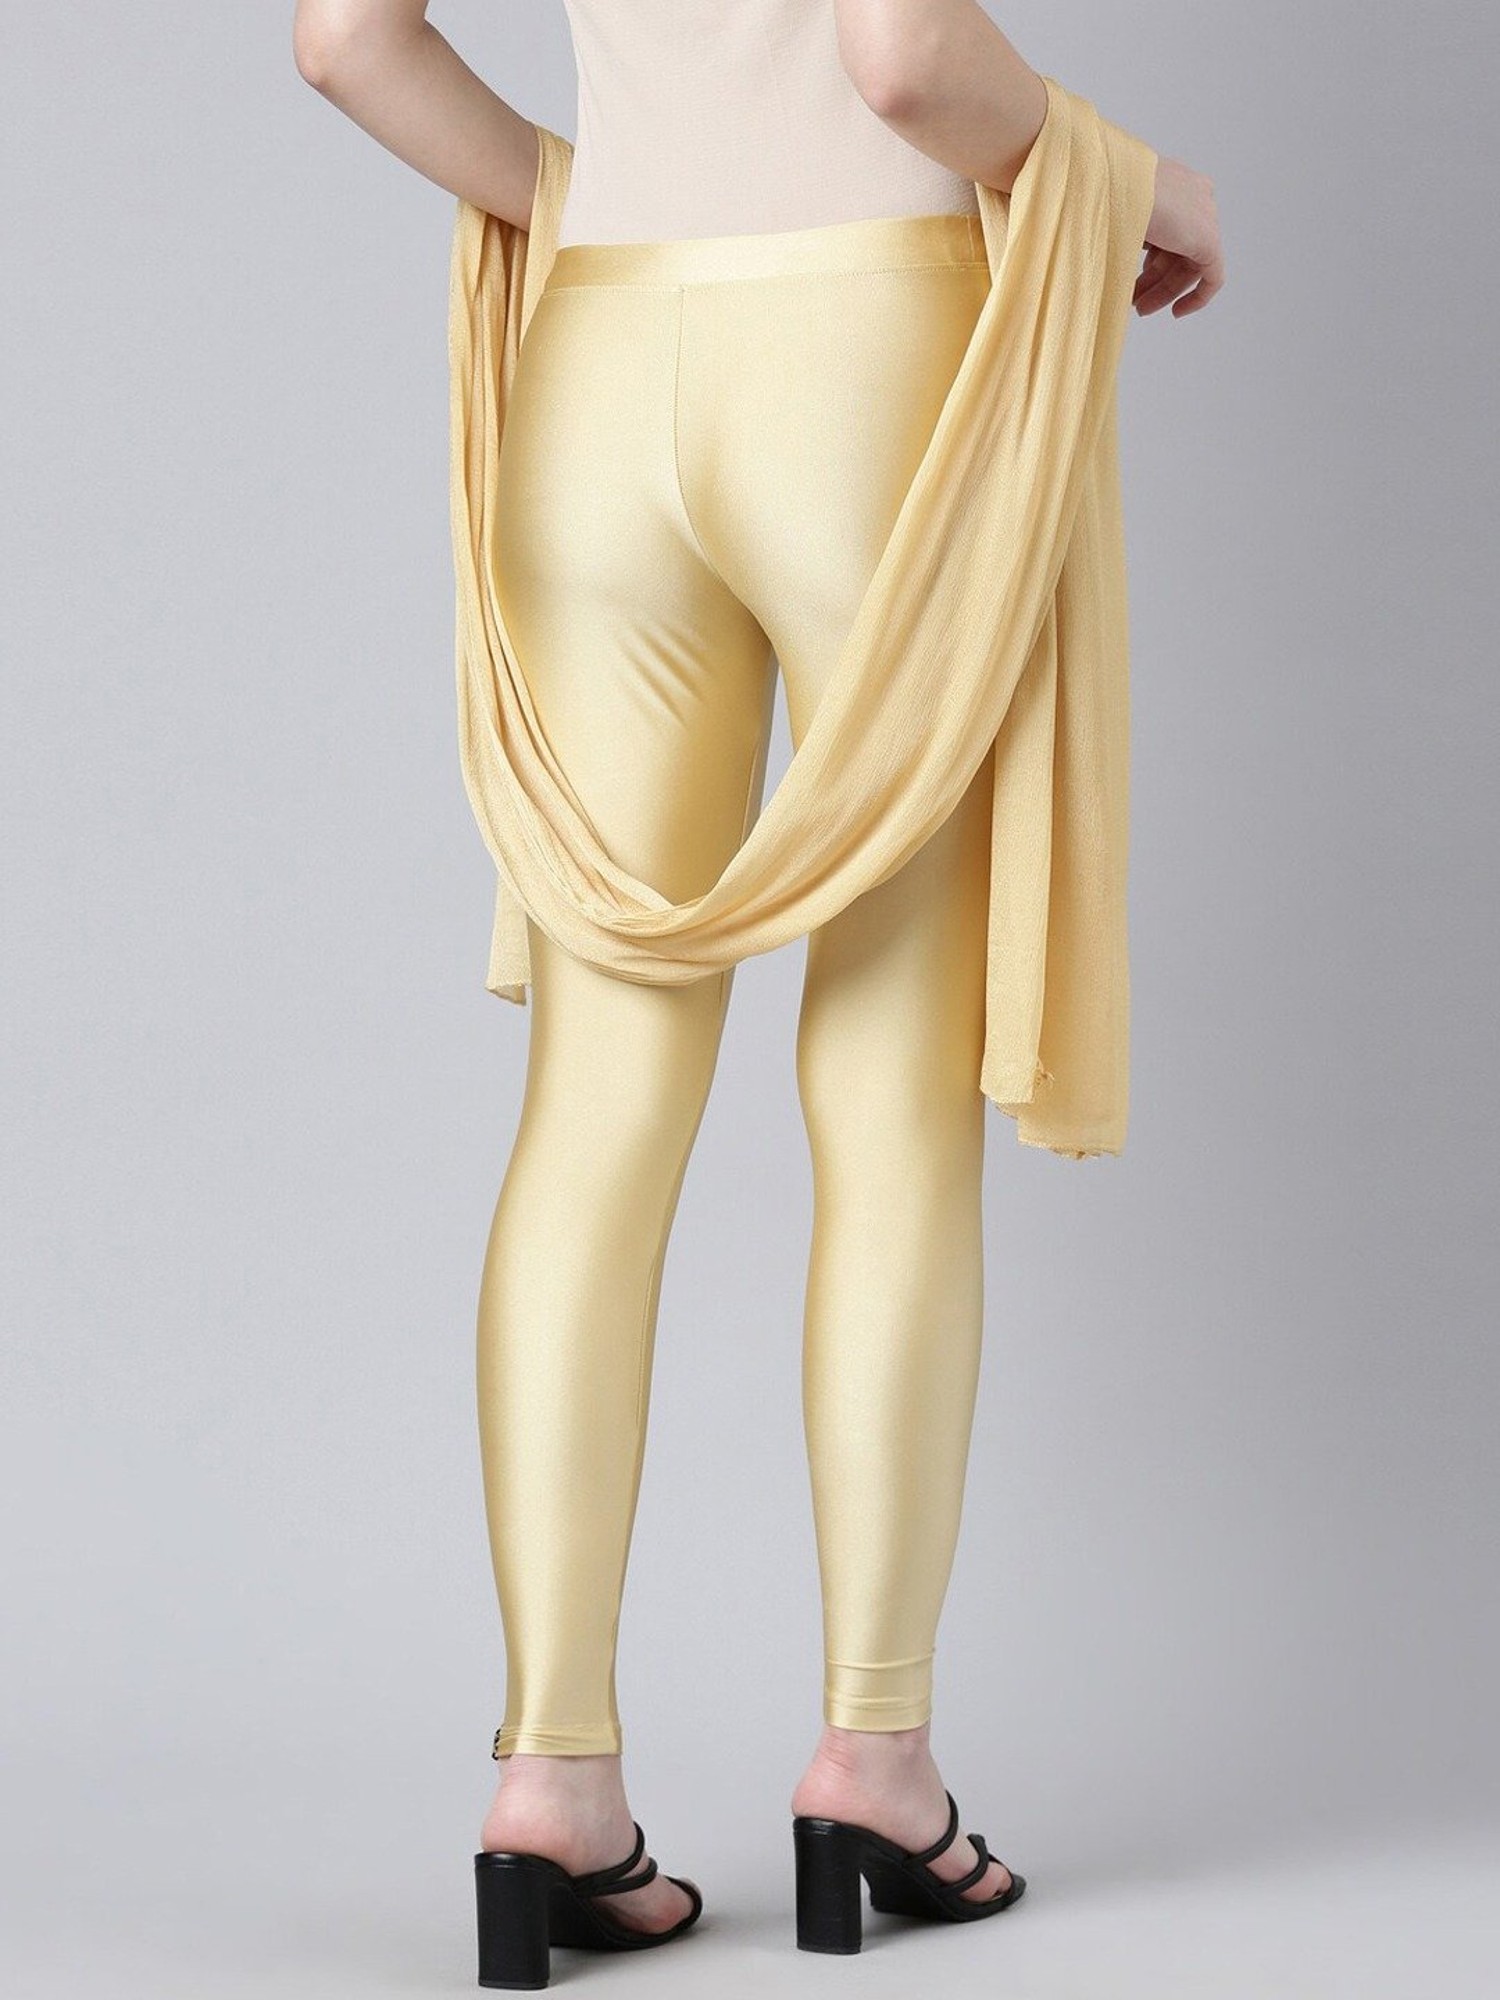 Skin Color (Beige) High Waist Ladies Beige Textured Woolen Leggings, Casual  Wear, Slim Fit at Rs 350 in Ludhiana